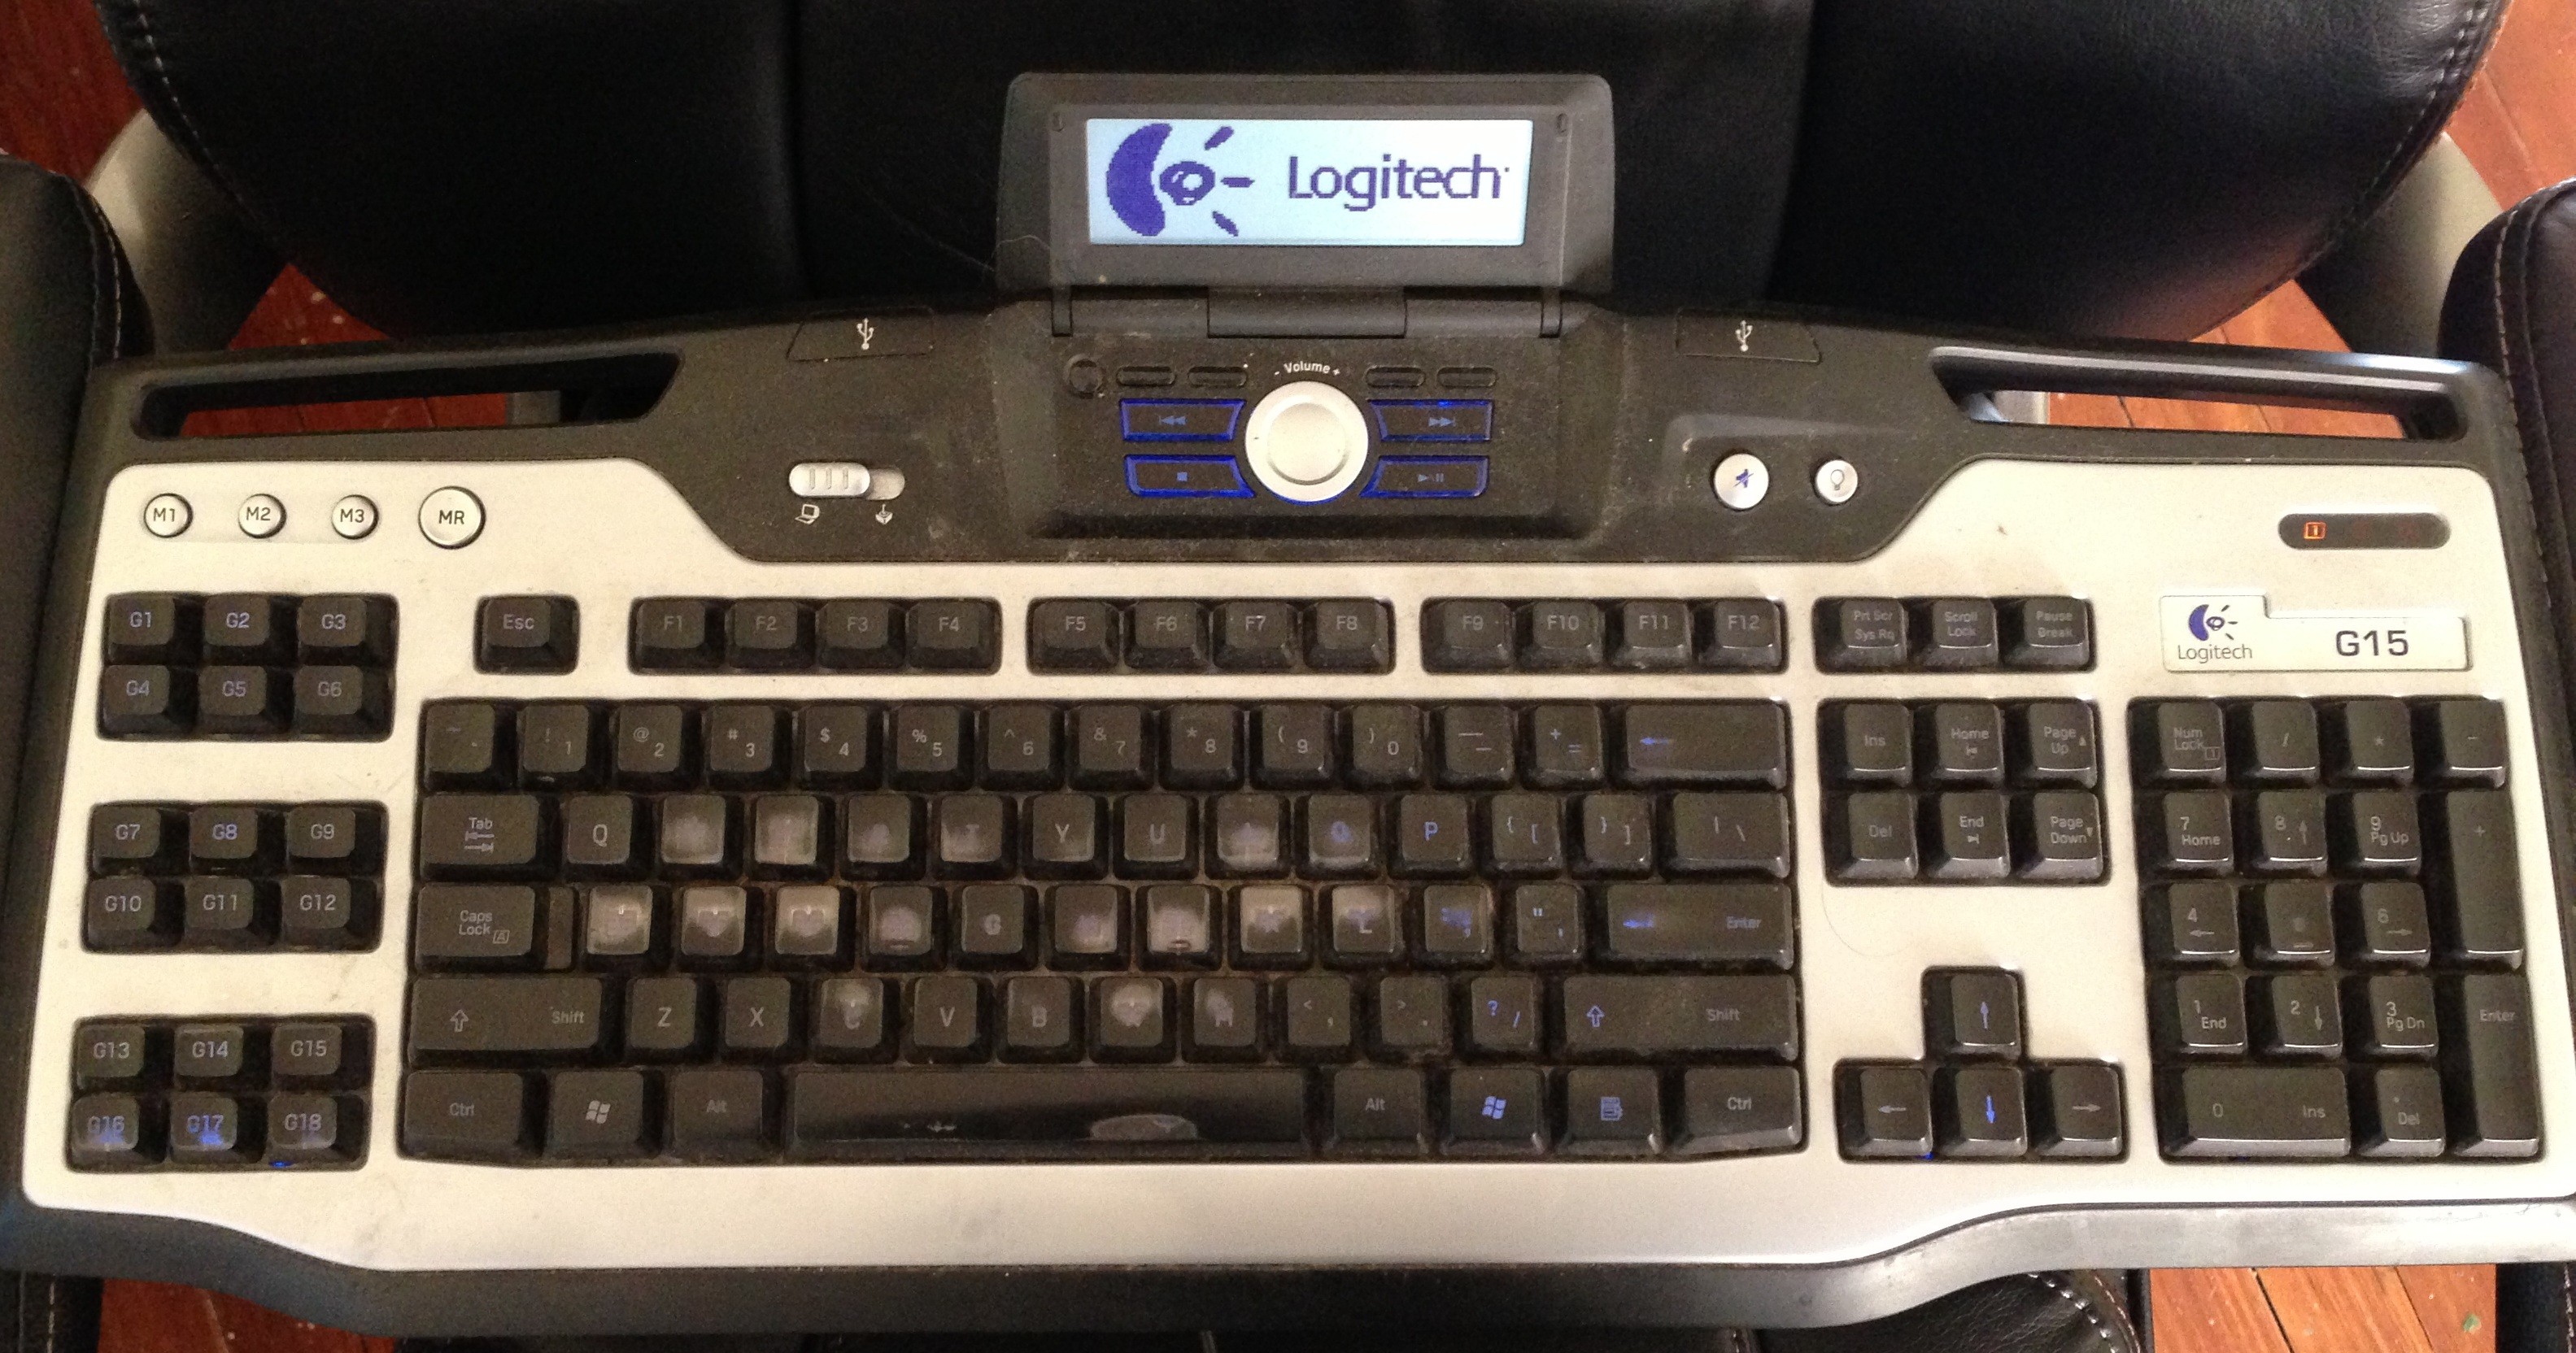 Um switch silencioso pra você que sonha em digitar sem barulho nenhum!, Keyboard